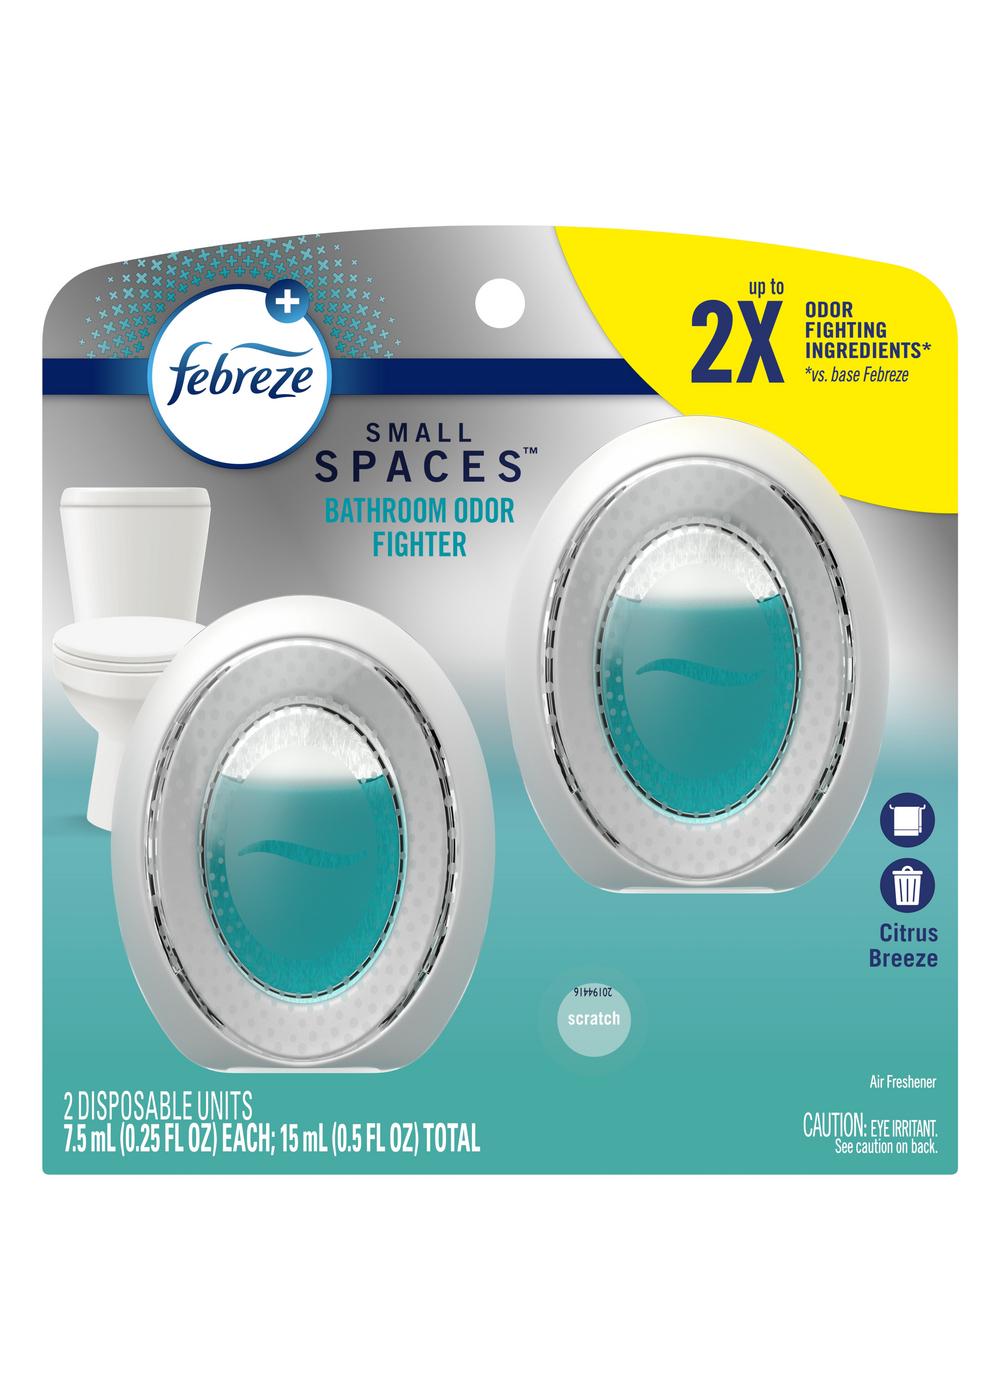 Original Febreze Small Space Air Fresher Odor Eliminator Toilet